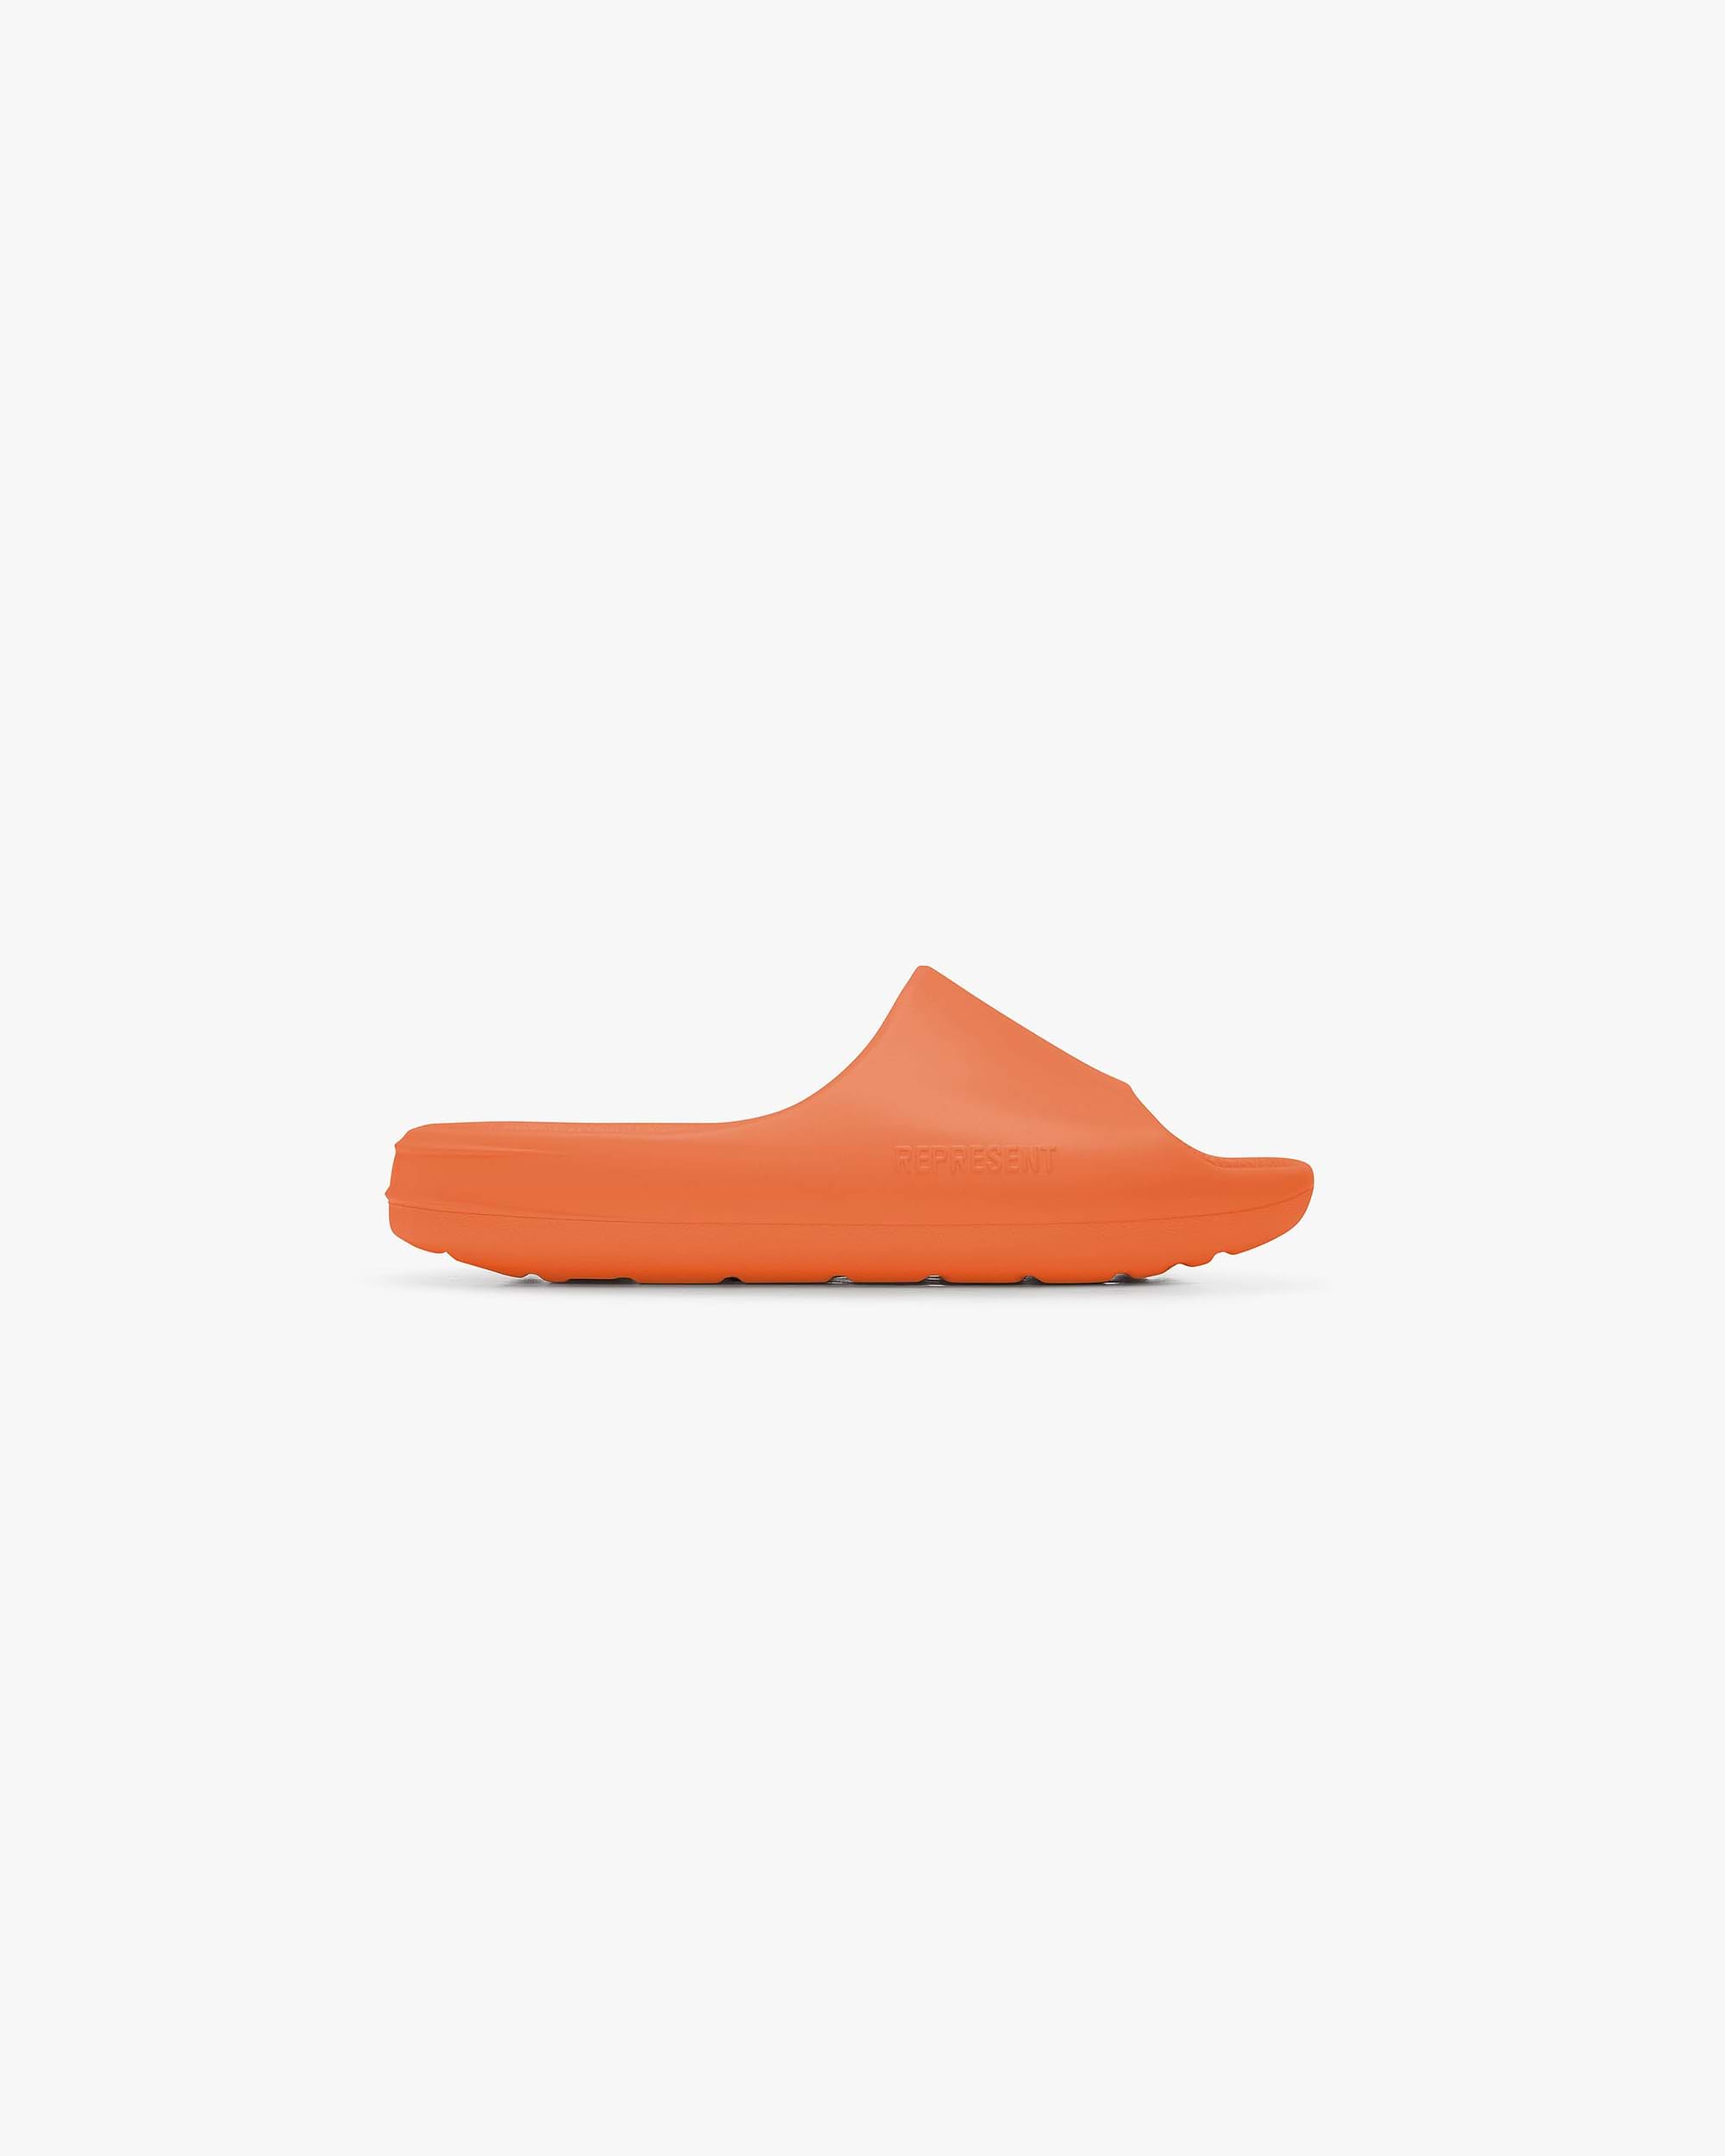 Sliders | Neon Orange Footwear Summer Vault 23 | Represent Clo